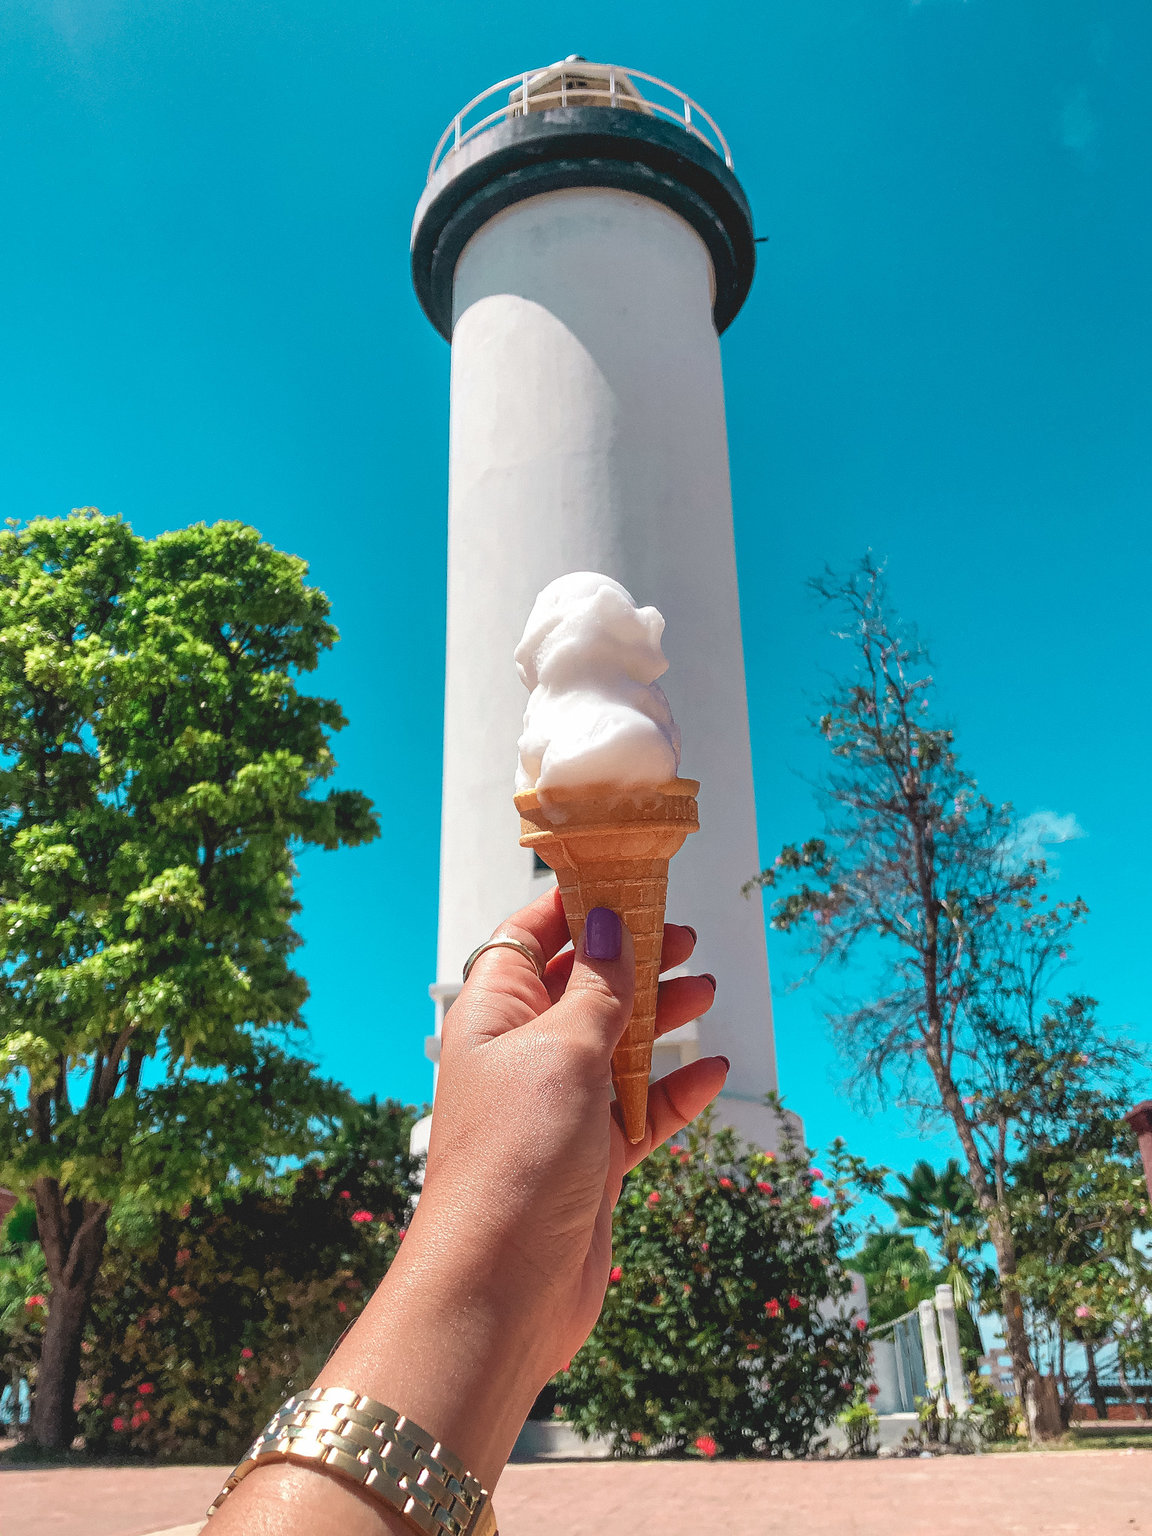 El Faro de Rincón, Punta Higuera, Puerto Rico, Ice Cream, Tropical Day, Vacations, Discover, Caribbean, Light House